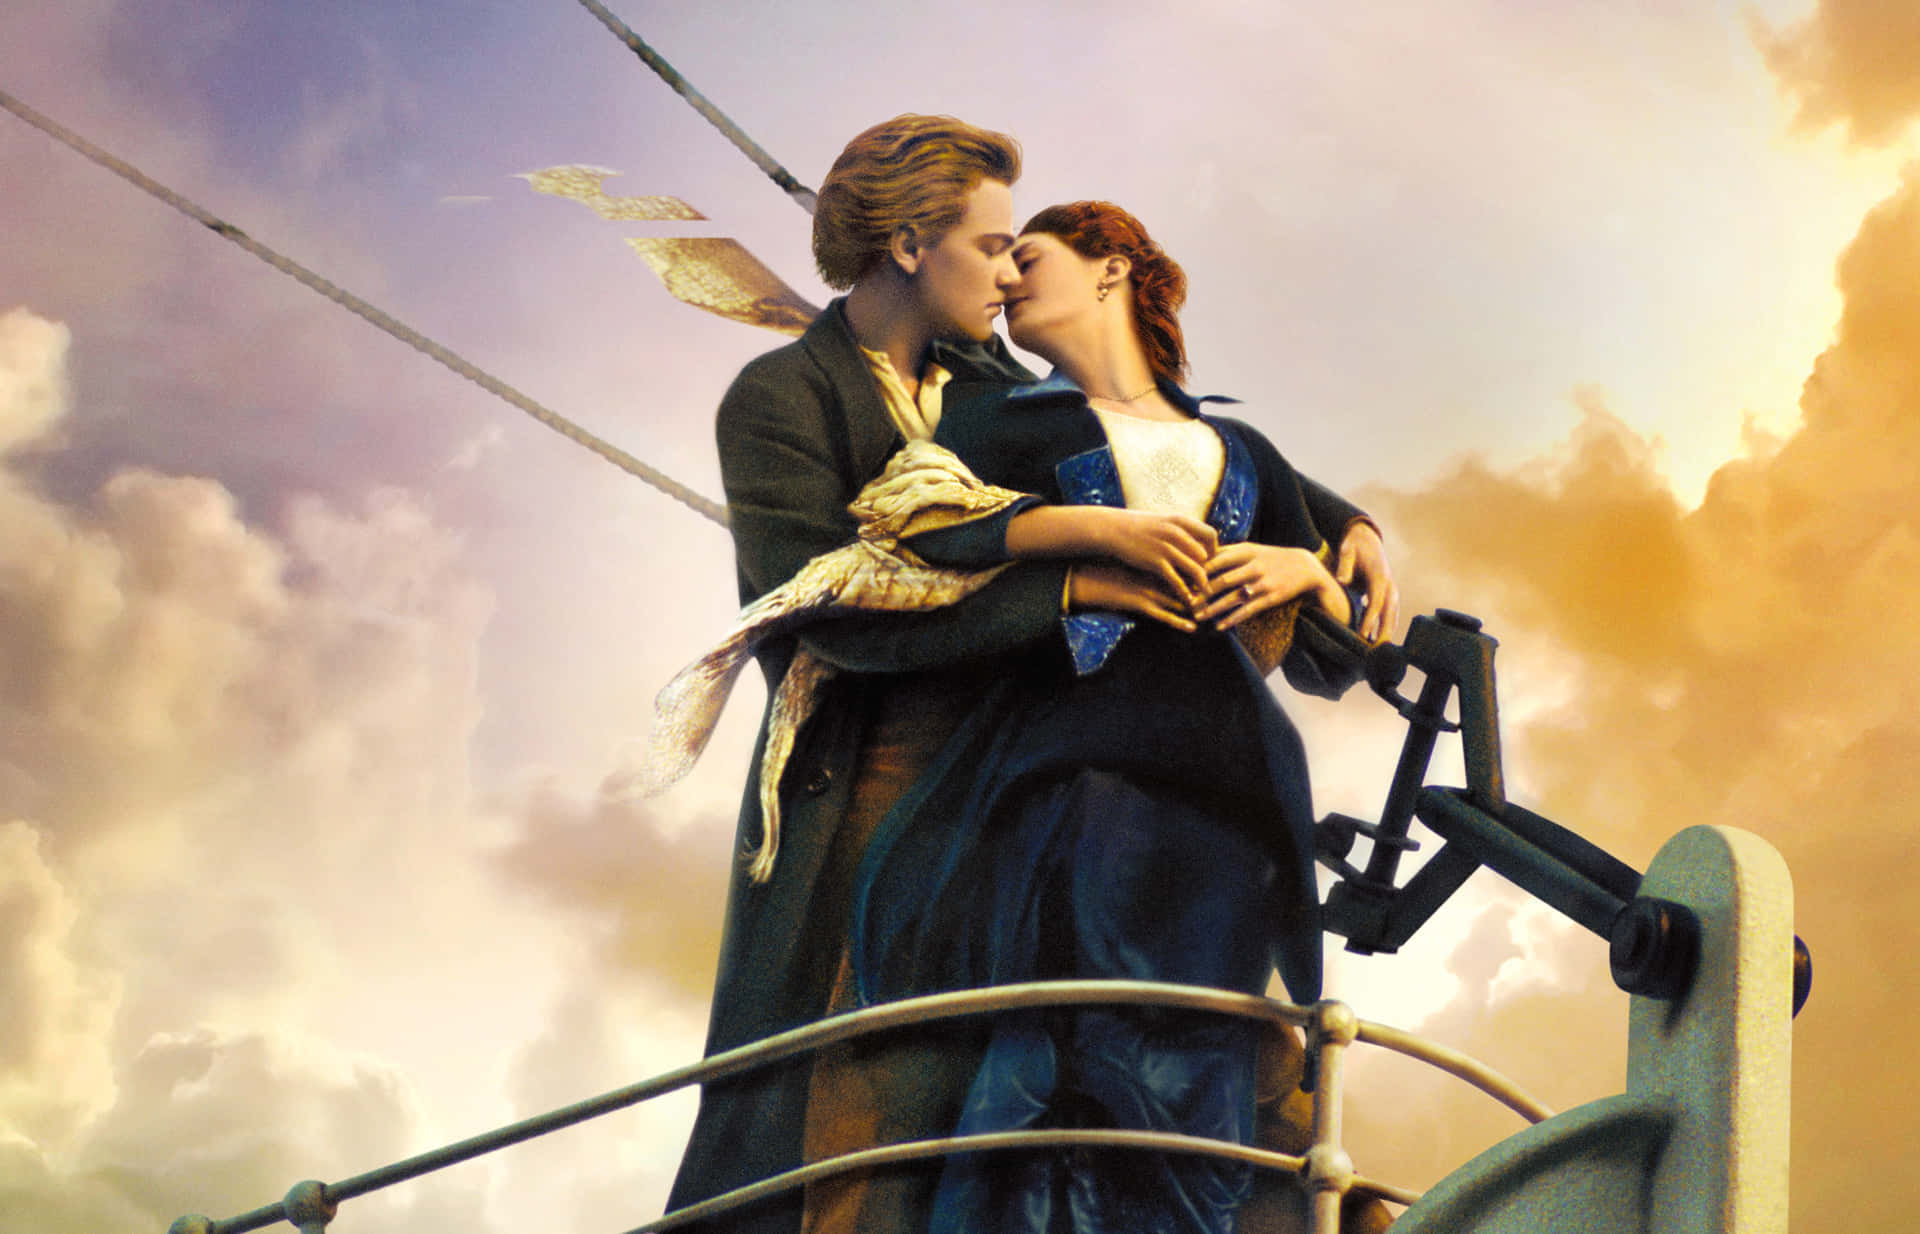 "Original poster for James Cameron's 1997 movie Titanic"